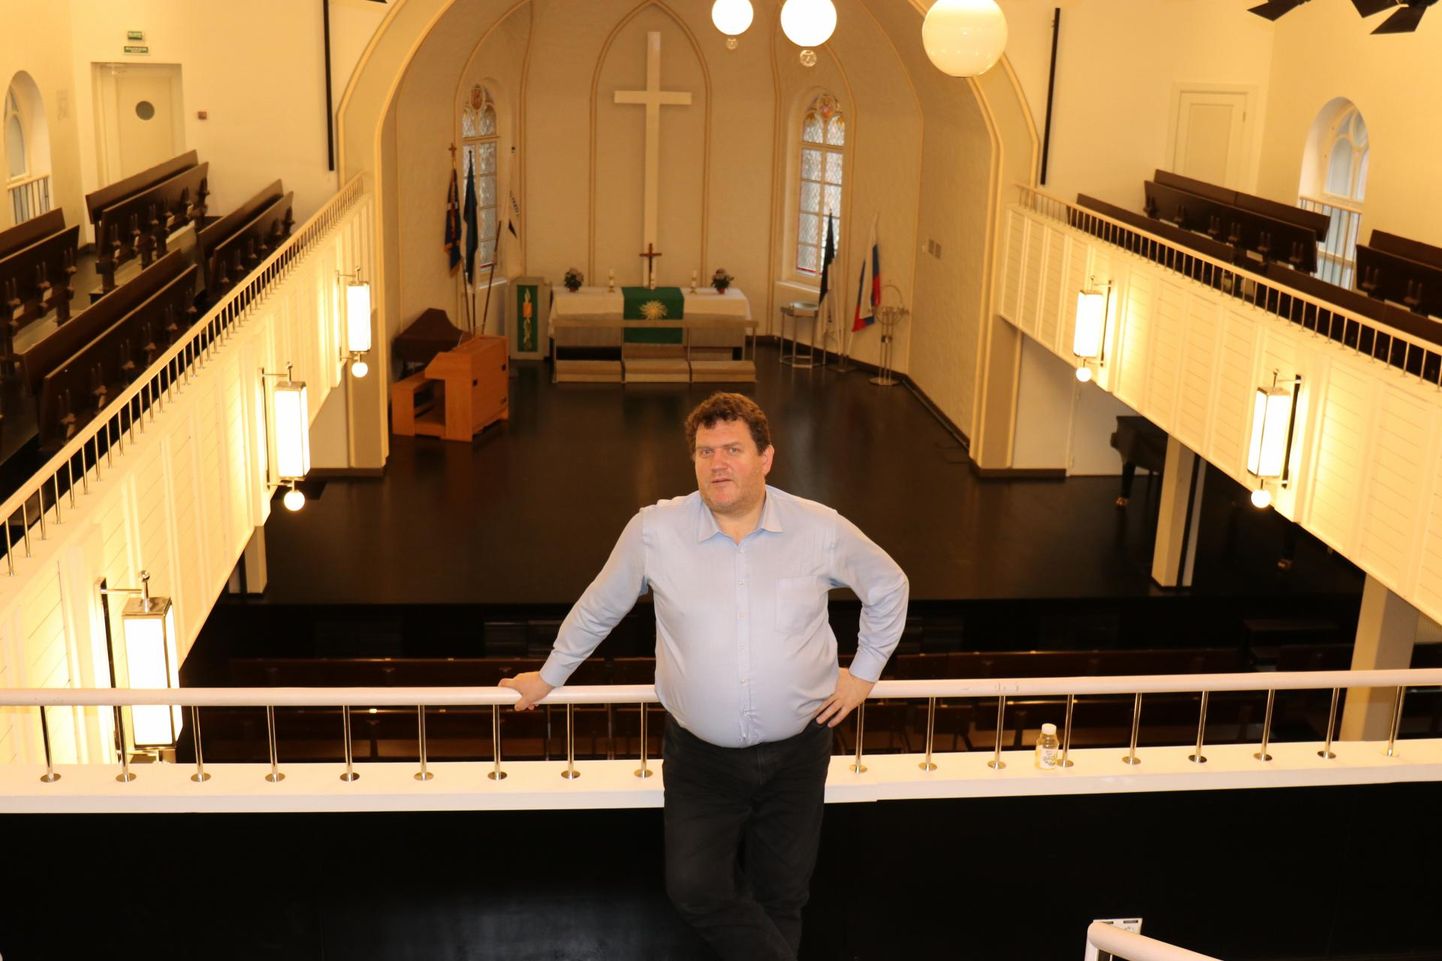 Oma nooruspõlve linna naasnud Jüri Leiten (53) on alates veebruarist Eesti Kontserdi Peterburi Jaani kiriku kontserdisaali juht ja omamoodi eesti kultuuri suursaadik Euroopa suuruselt kolmandas linnas.